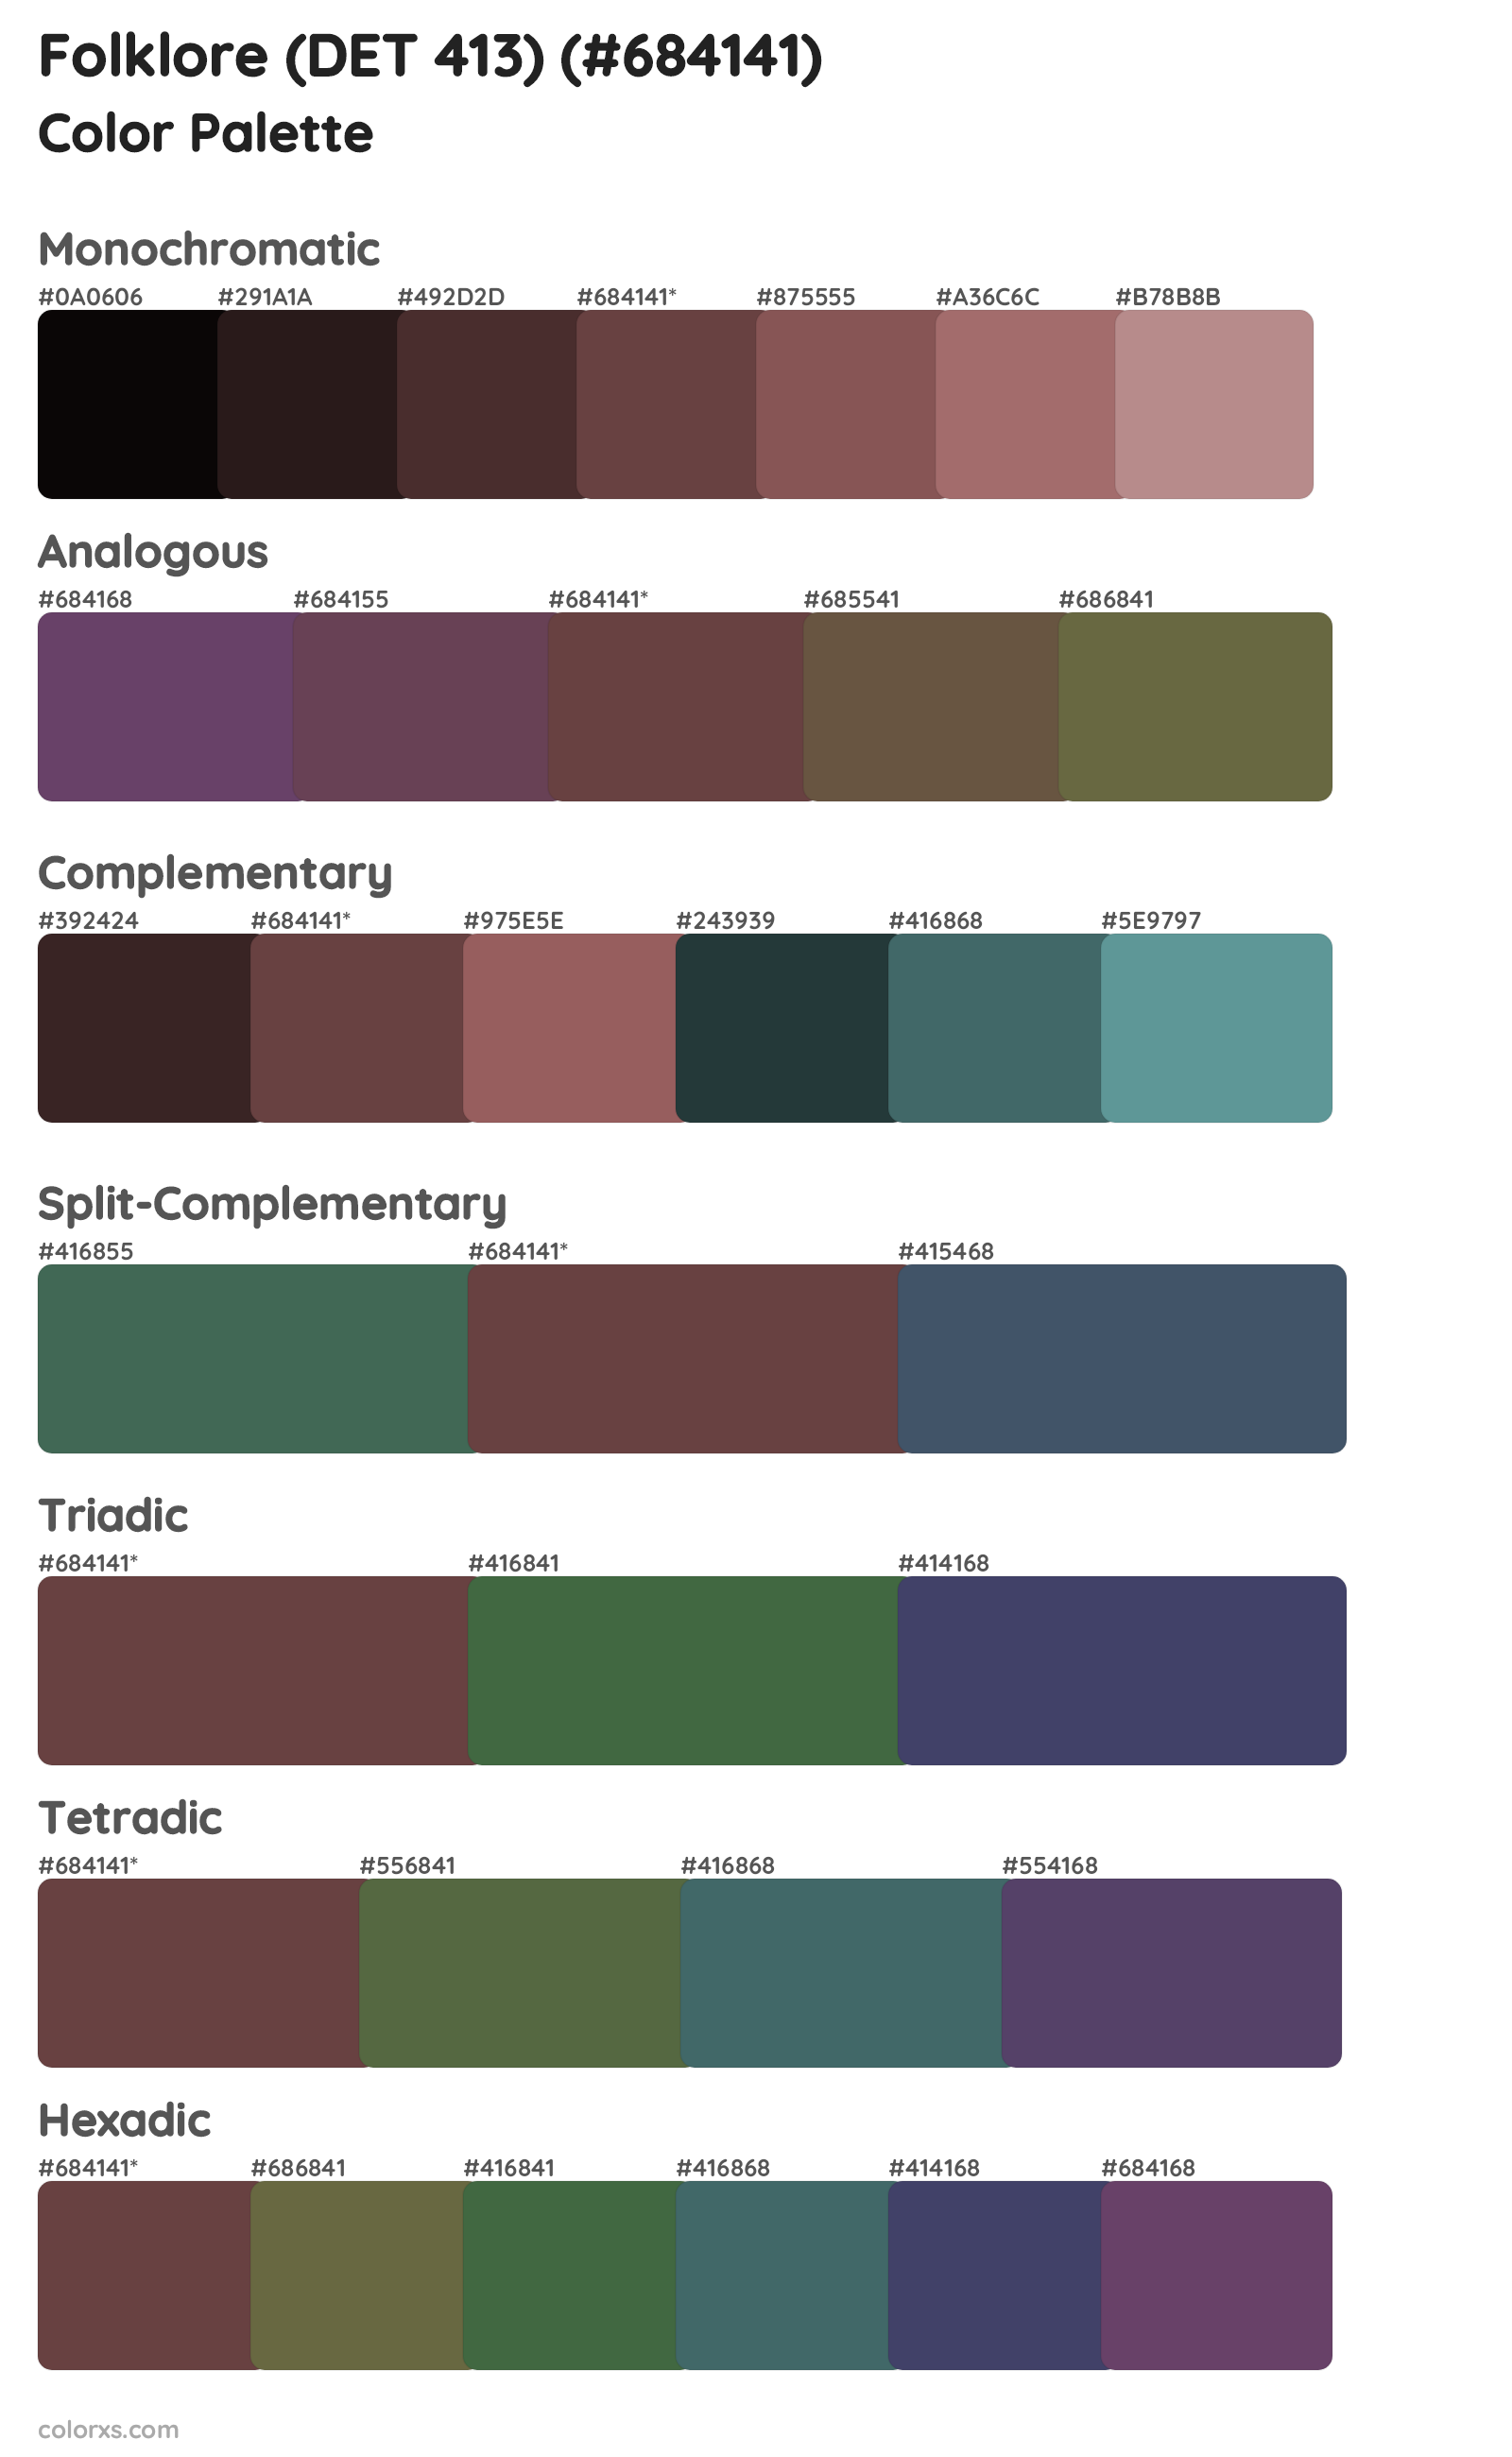 Folklore (DET 413) Color Scheme Palettes